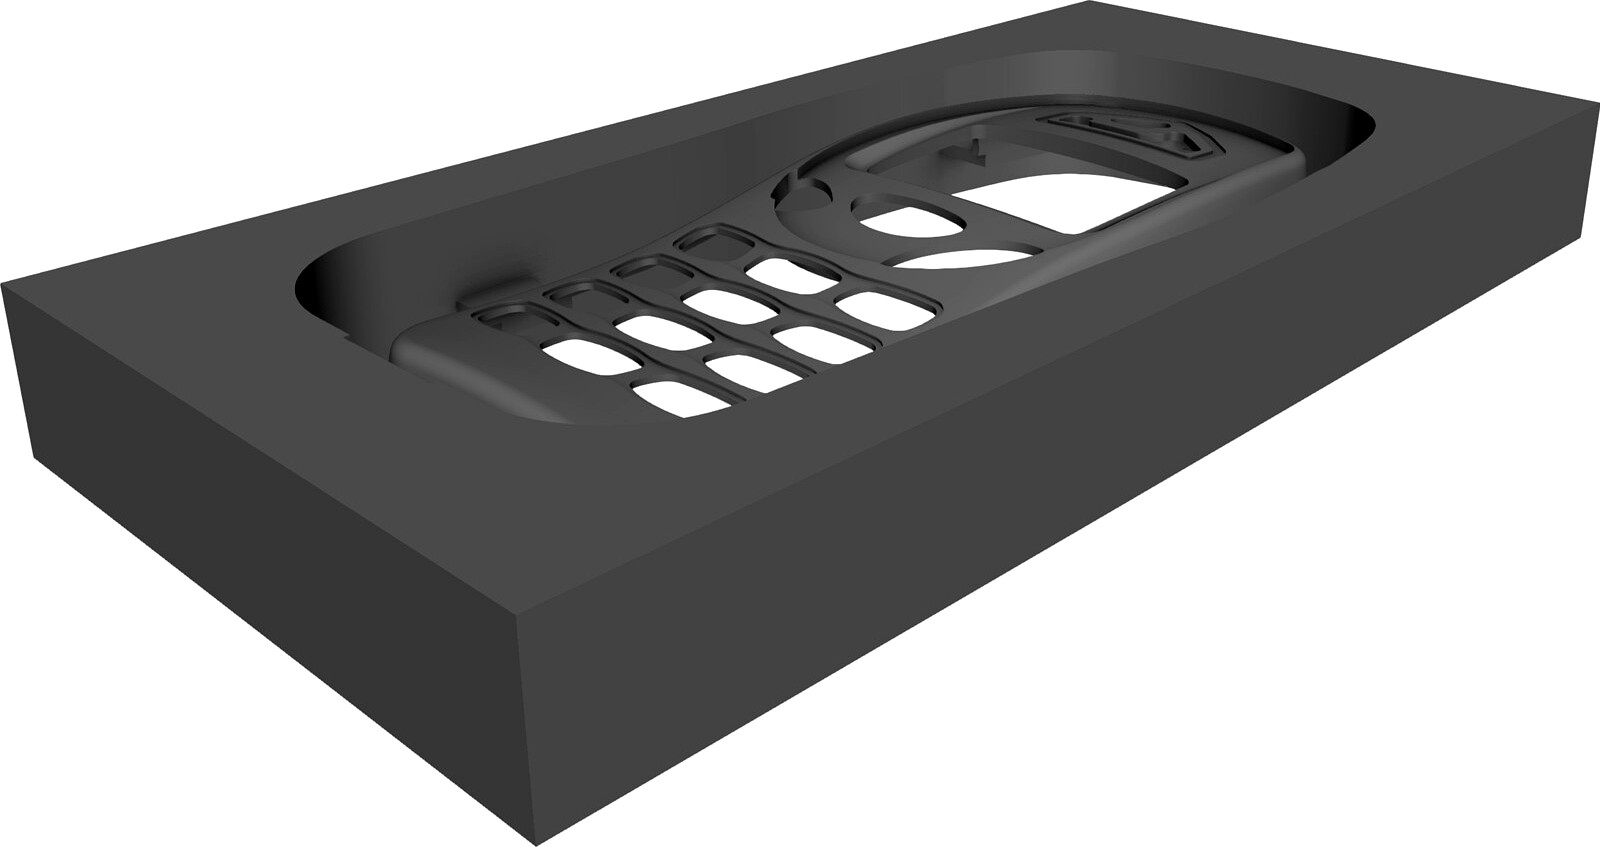 Nokia Phone Mold 3D CAD Model